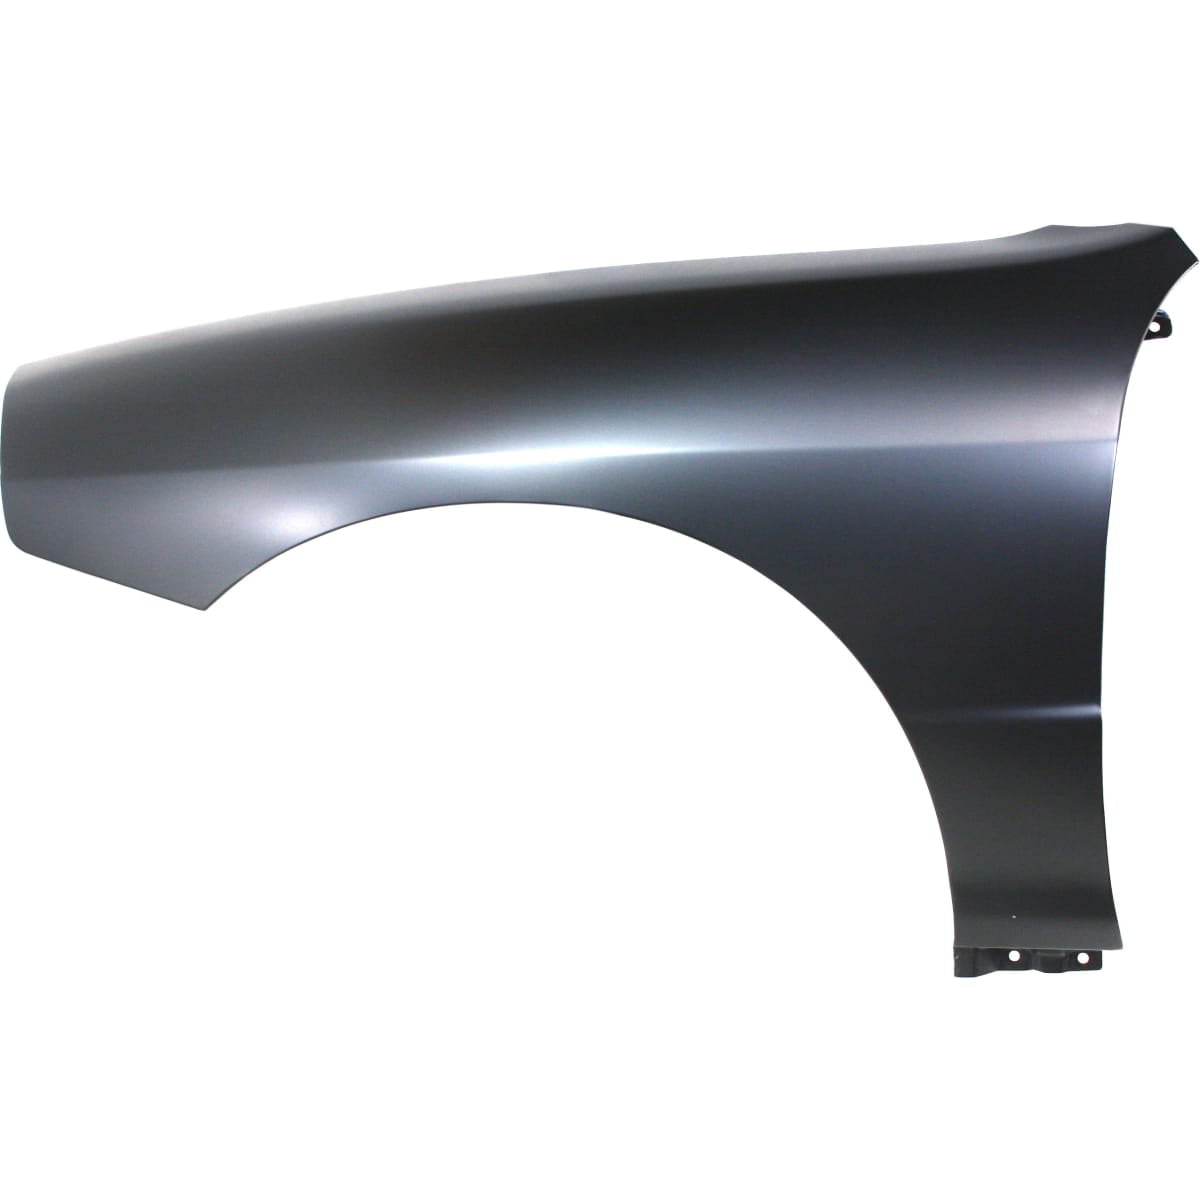 New Set Of 2 Front LH & RH Fender Inner Splash Shield For Acura Integra 94-01 